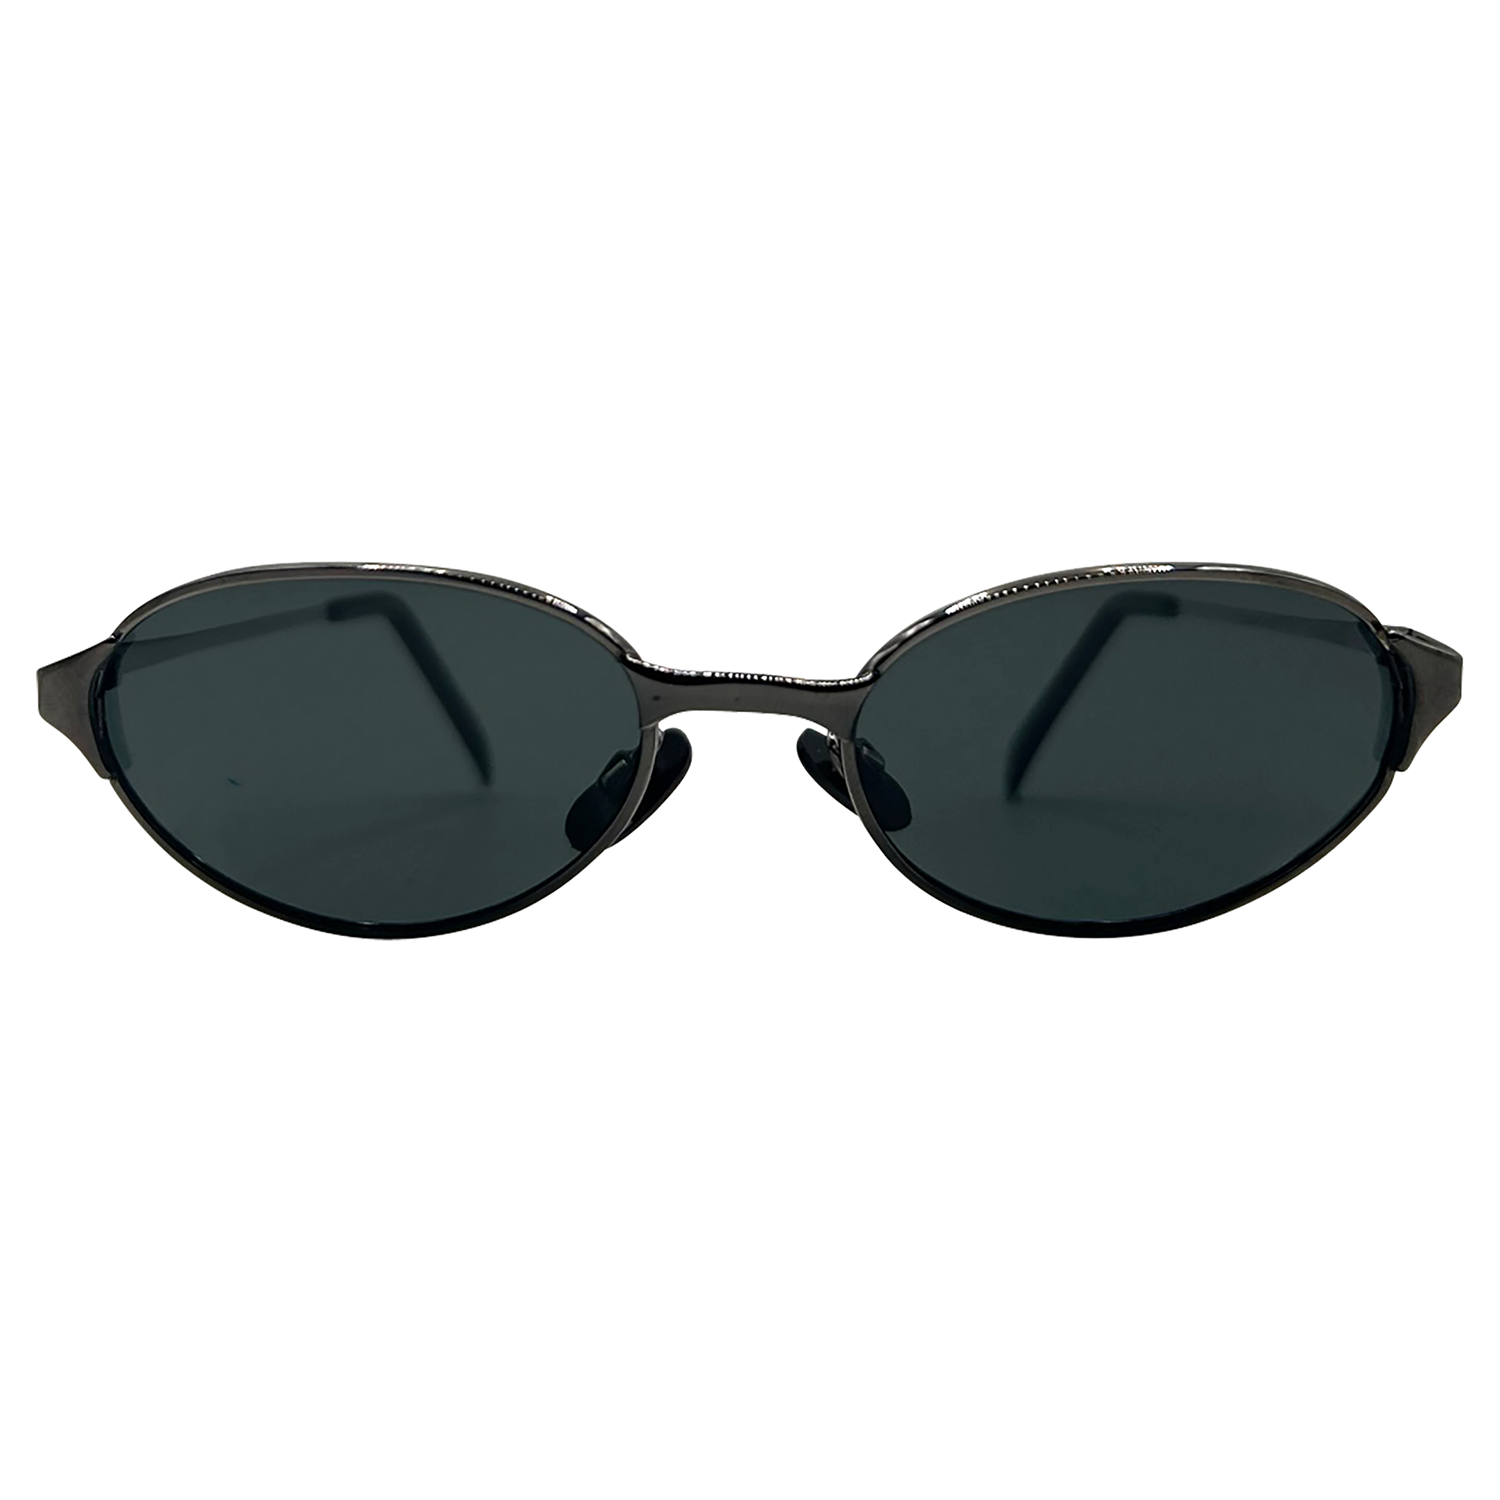 RESIST Oval Sunglasses